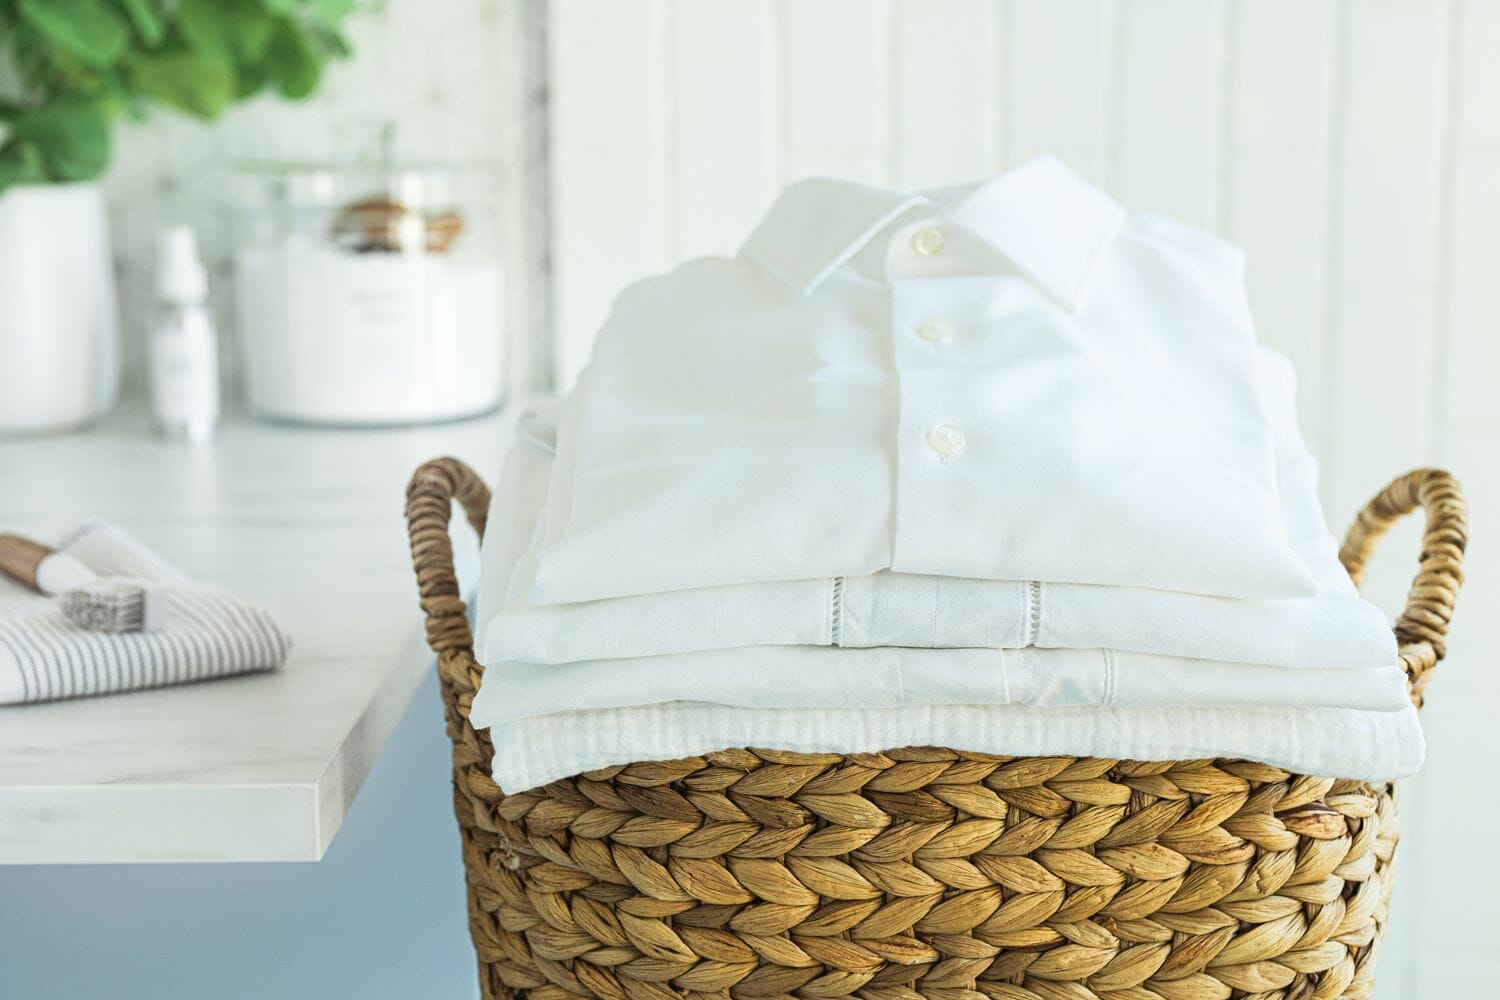 بدون مجهود..خبيرة تكشف طريقة فعالة لإزالة البقع من الملابس البيضاء watanserb.com